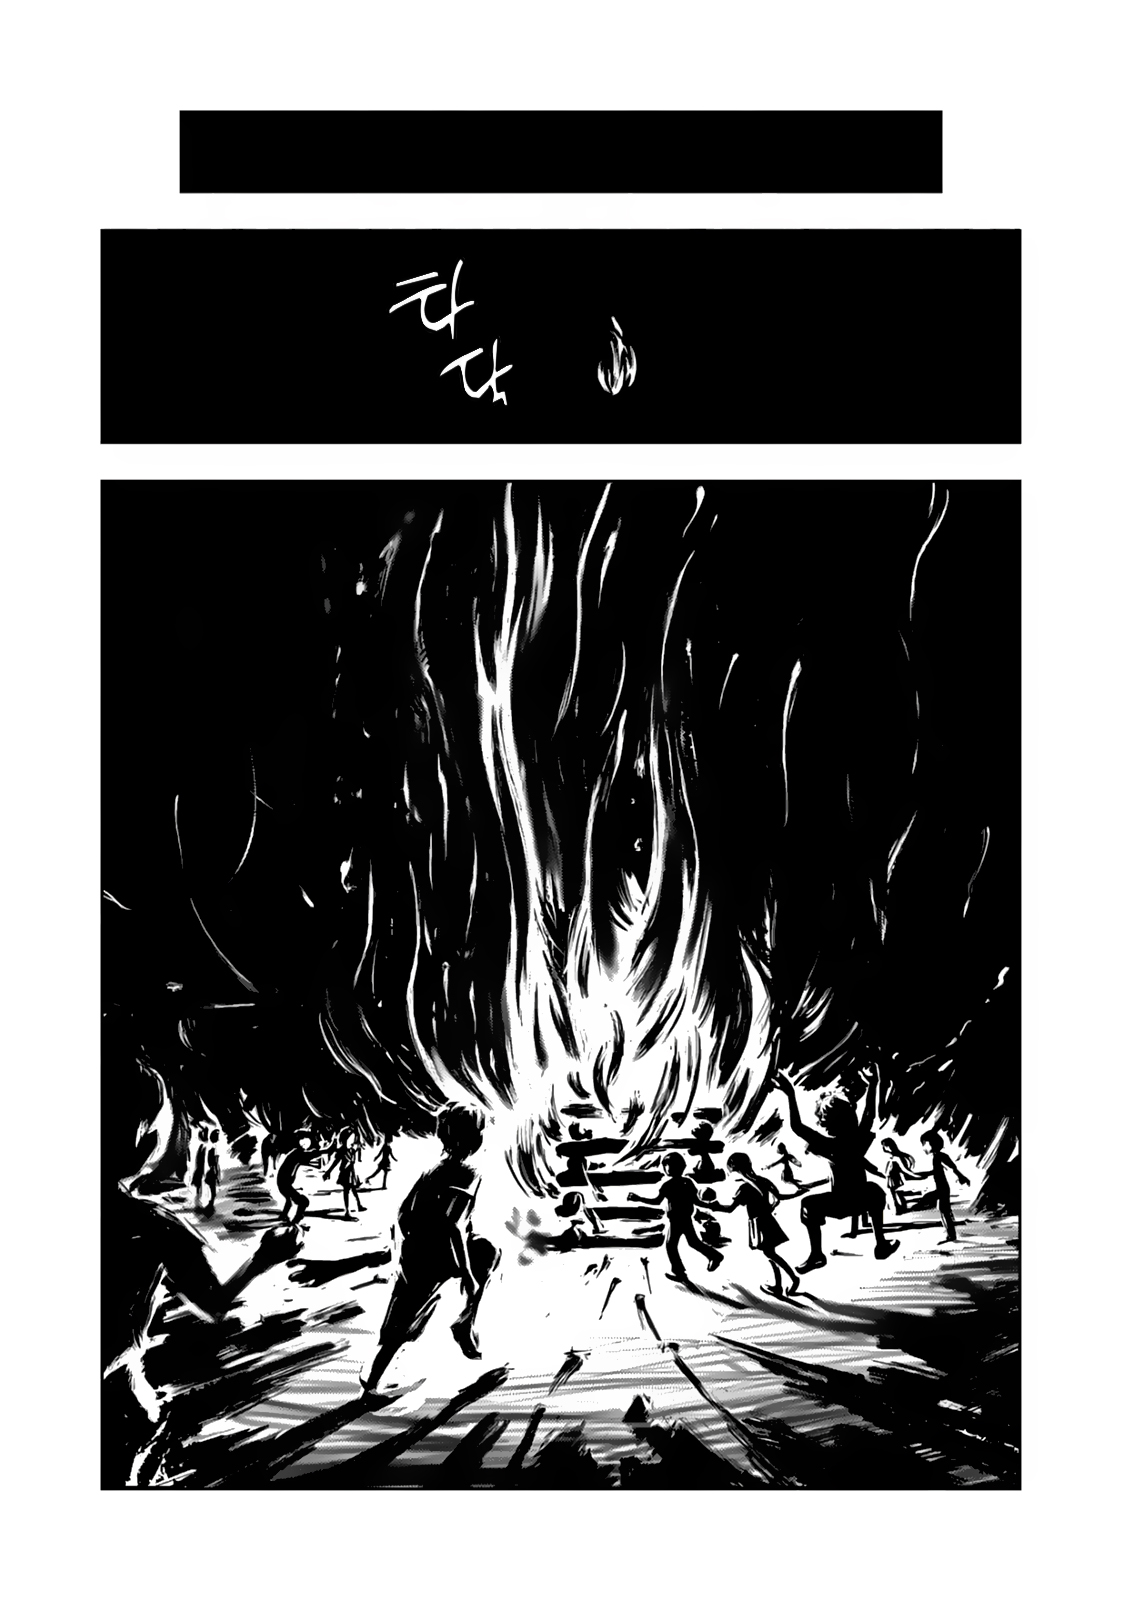 (스압) 찐따가 인싸녀 별명 지어주는 만화.manhwa